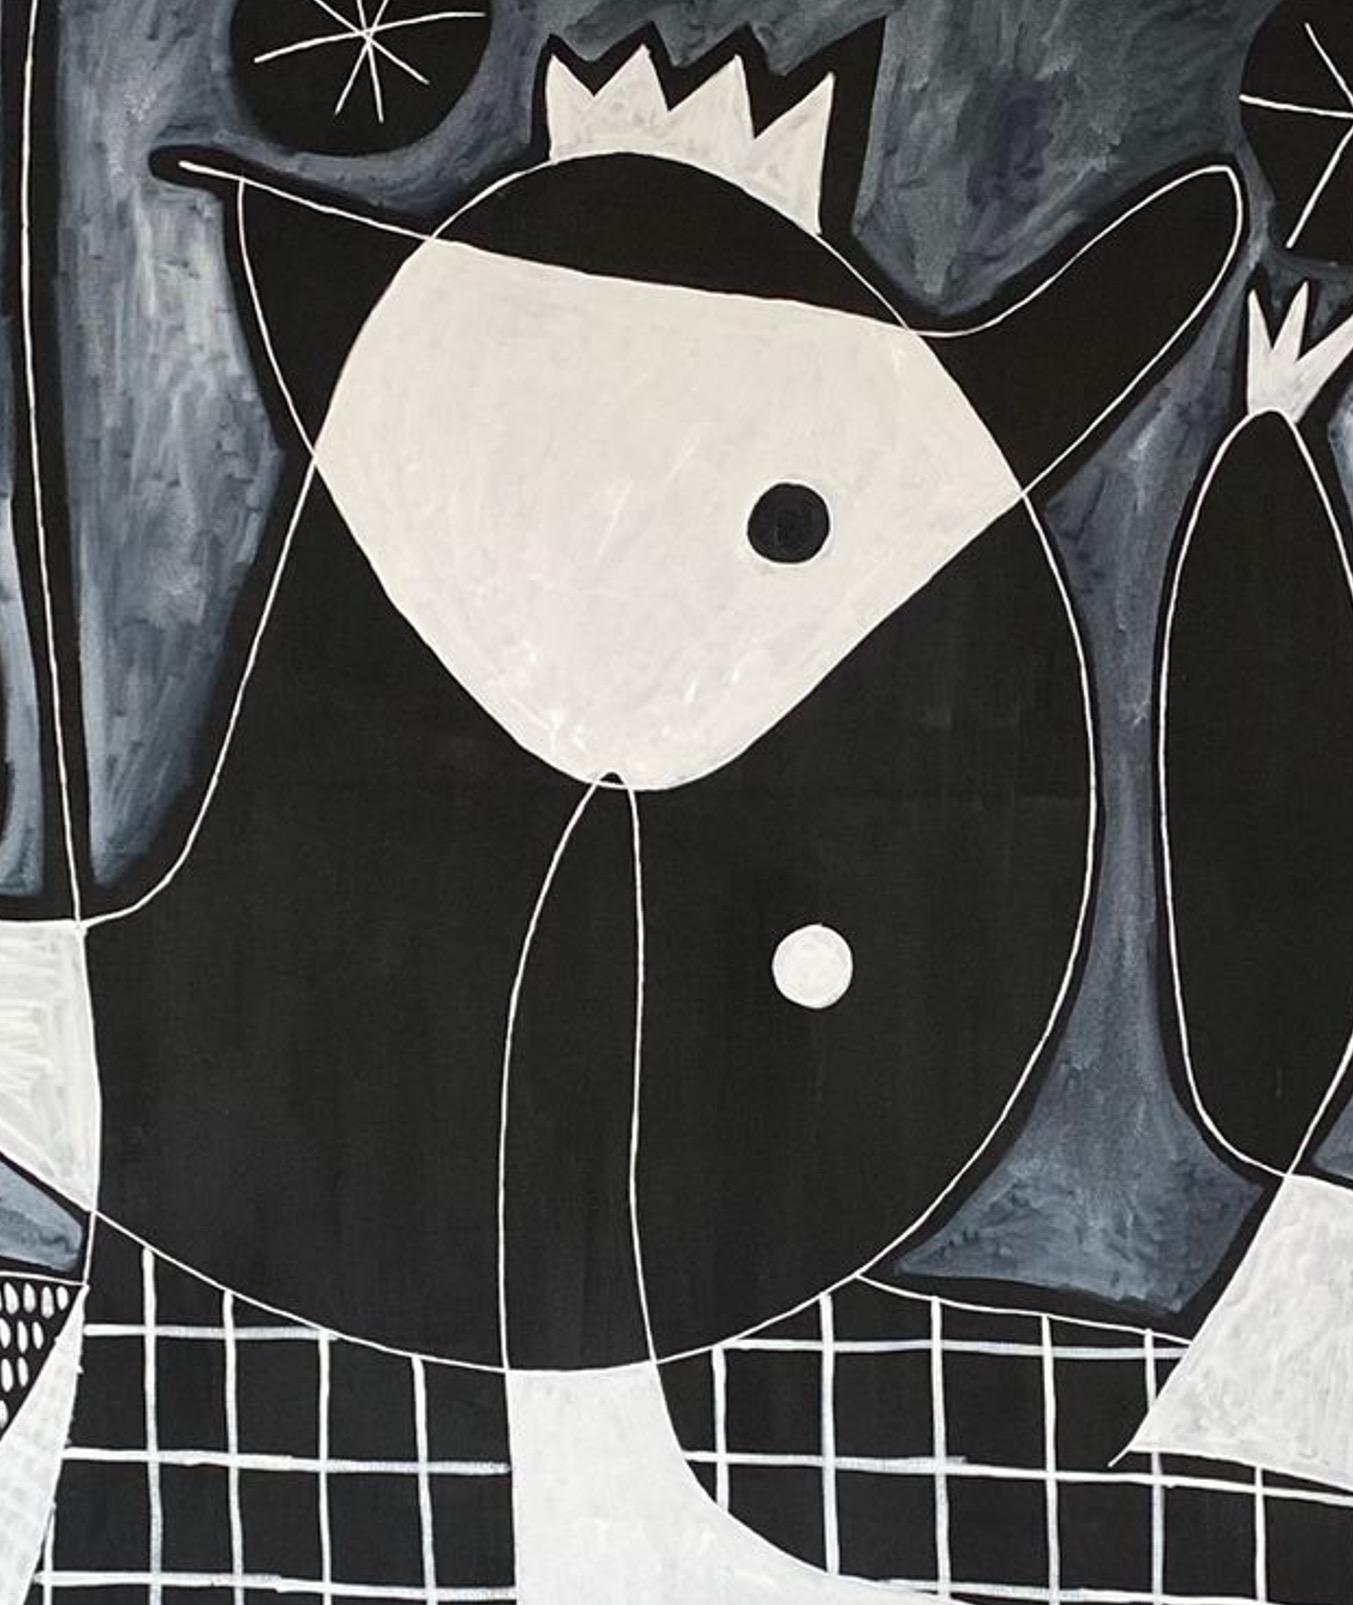 Art contemporain, peinture abstraite
Acrylique sur toile
185x270cm
Signé 
LIVRAISON GRATUITE ROLLE




A propos de l'artiste
Enrique Pichardo (Mexico, 1973) est diplômé de l'Escuela Nacional de Pintura, Escultura y Grabado (ENPEG) 